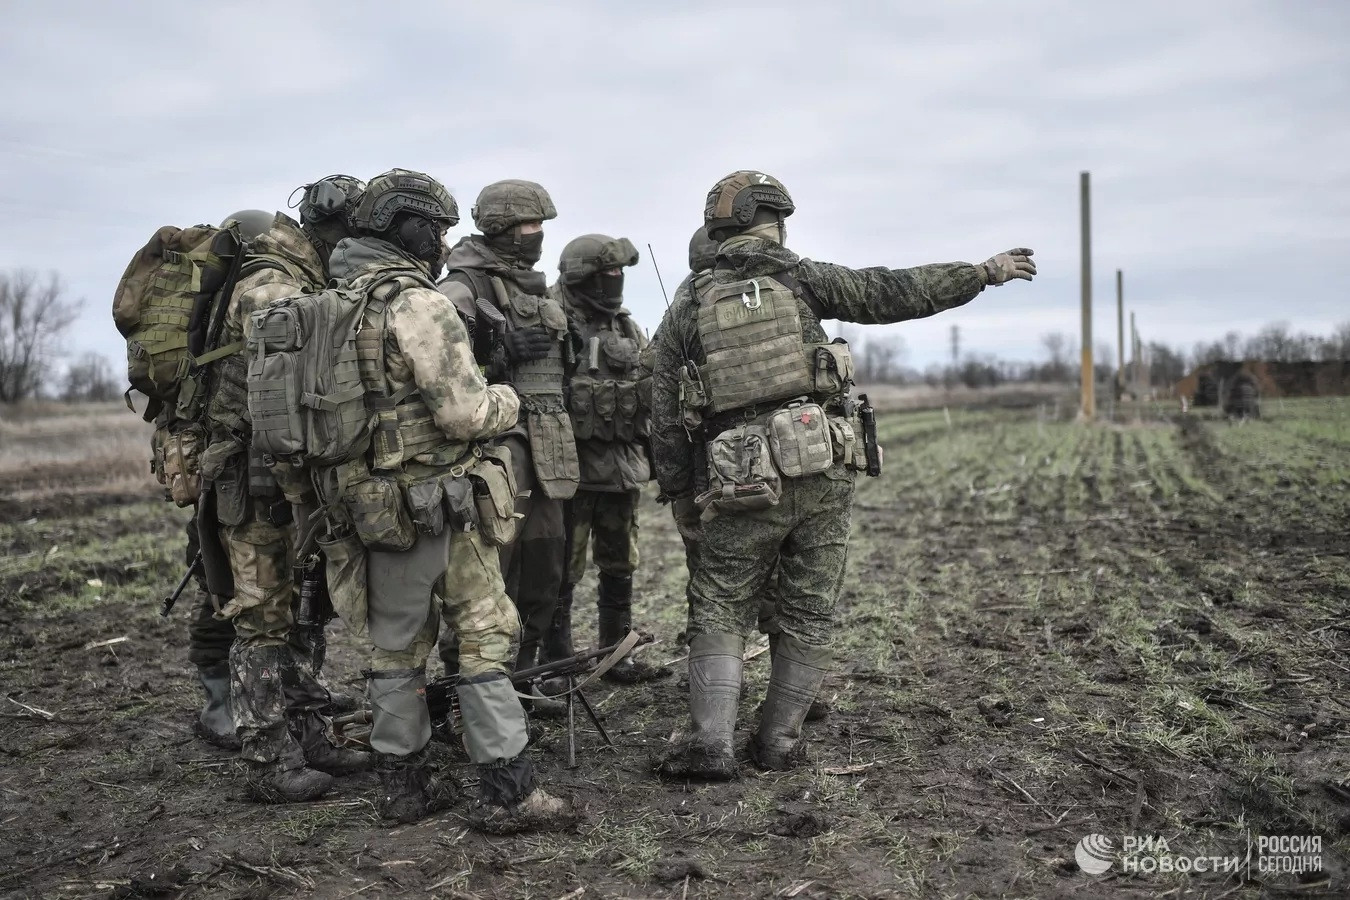 Nga huy động 79.800 quân ở Donbass, Kiev không định chấp nhận đề xuất của Moscow